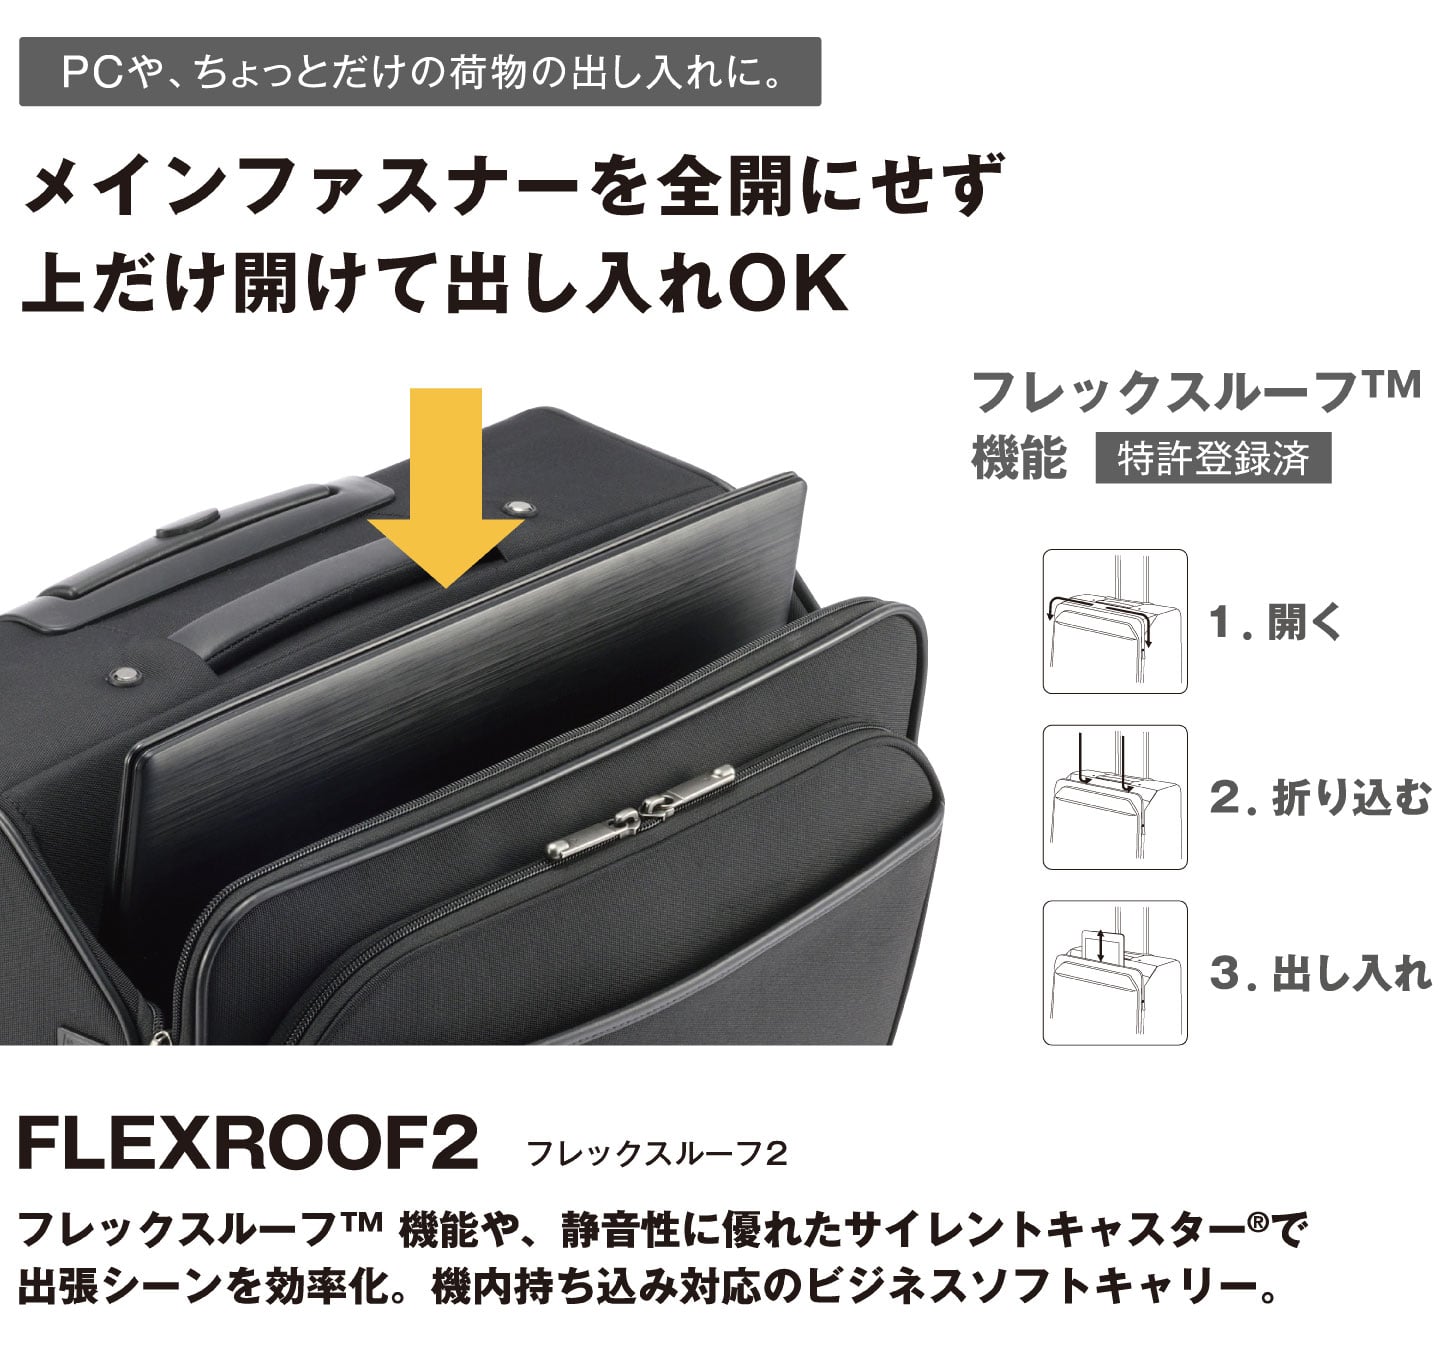 ace. FLEXROOF2（フレックスルーフ2）フレックスルーフ機能やサイレントキャスターを備え、出張シーンにおける効率化を追求したジッパータイプのキャビンサイズラゲージシリーズ